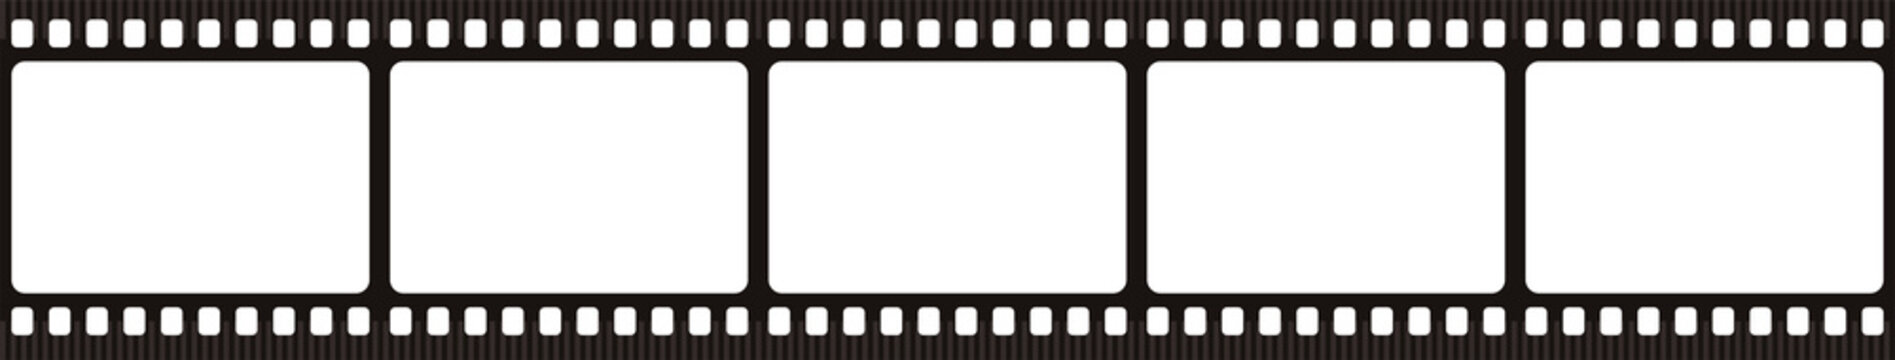 Film strip. Retro film strip frame. Cinema filmstrip template.